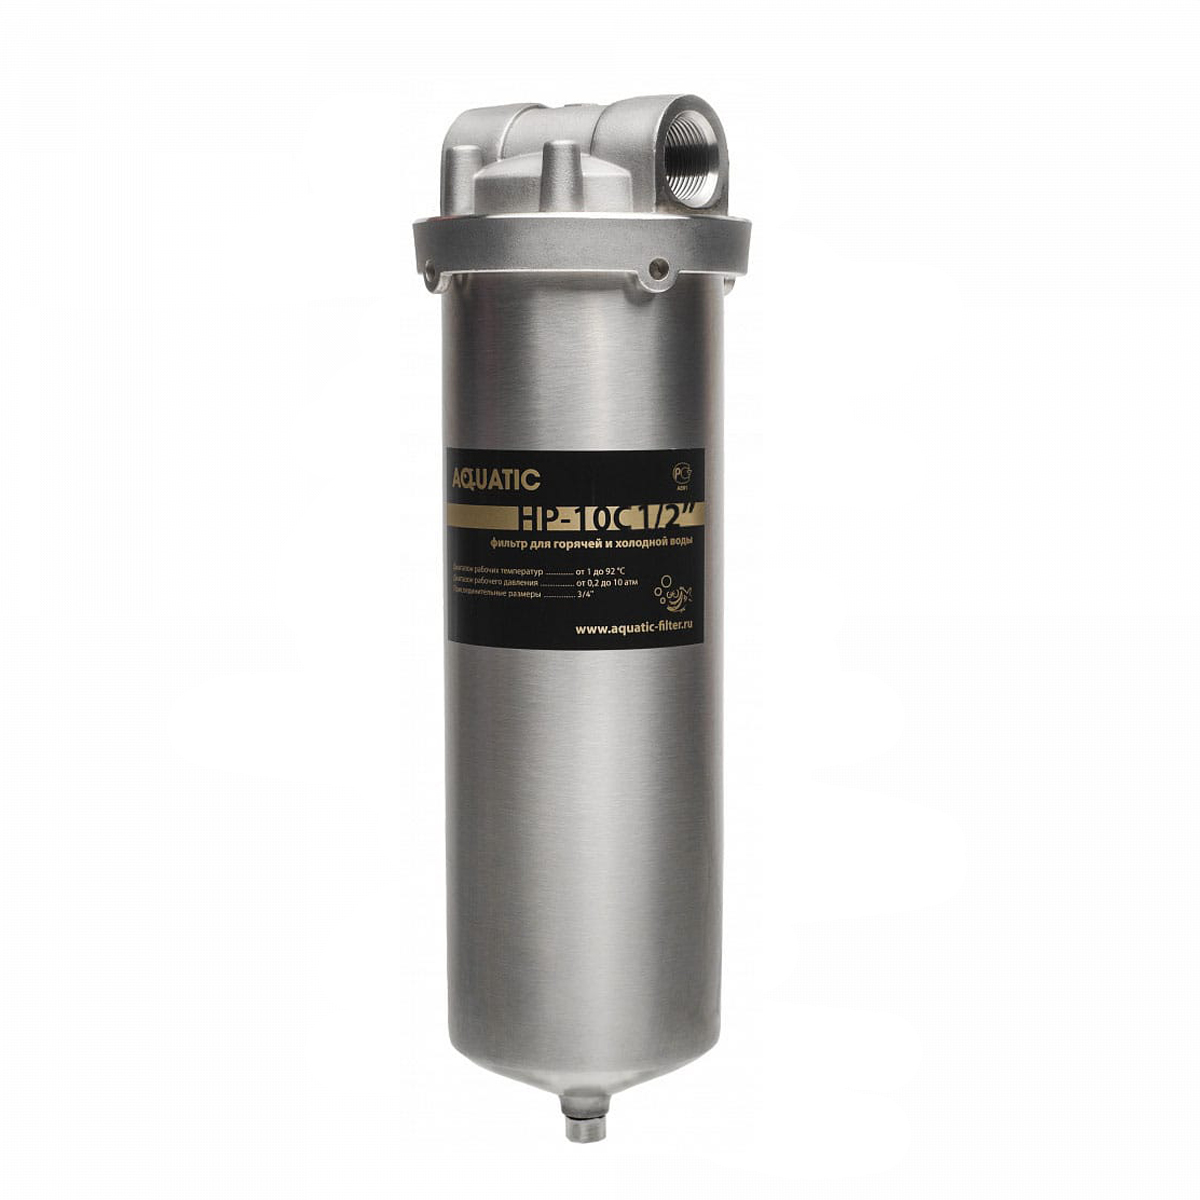 Корпус фильтра Aquatic HP-10C 1/2" Premium  для горячей и холодной воды 1/2"ВР нержавеющая сталь, со сливом